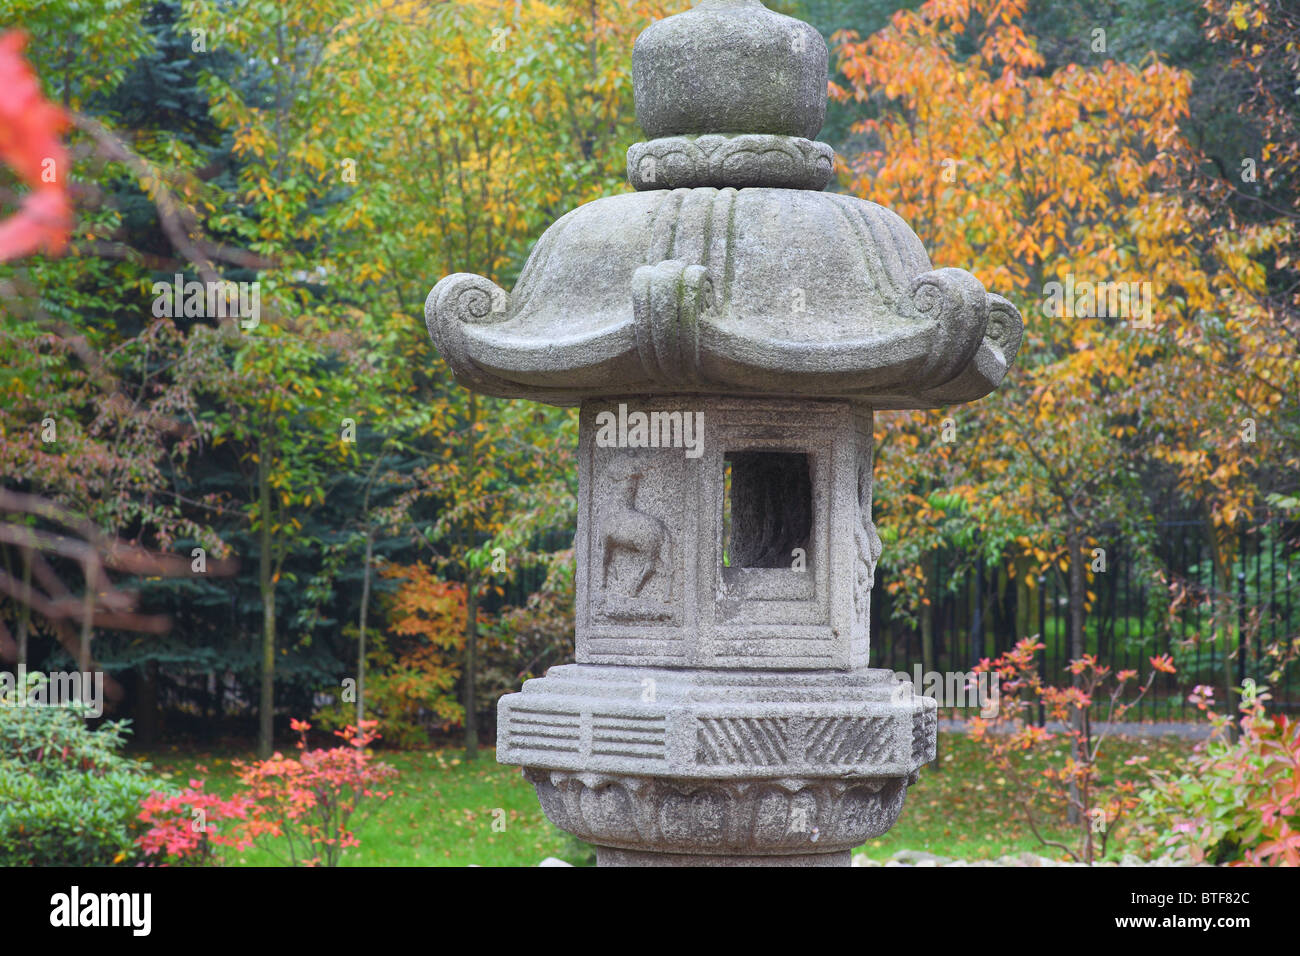 Japanischer Steingarten Laterne im Herbst Herbstfarben Wroclaw/Breslau Polen Stockfoto